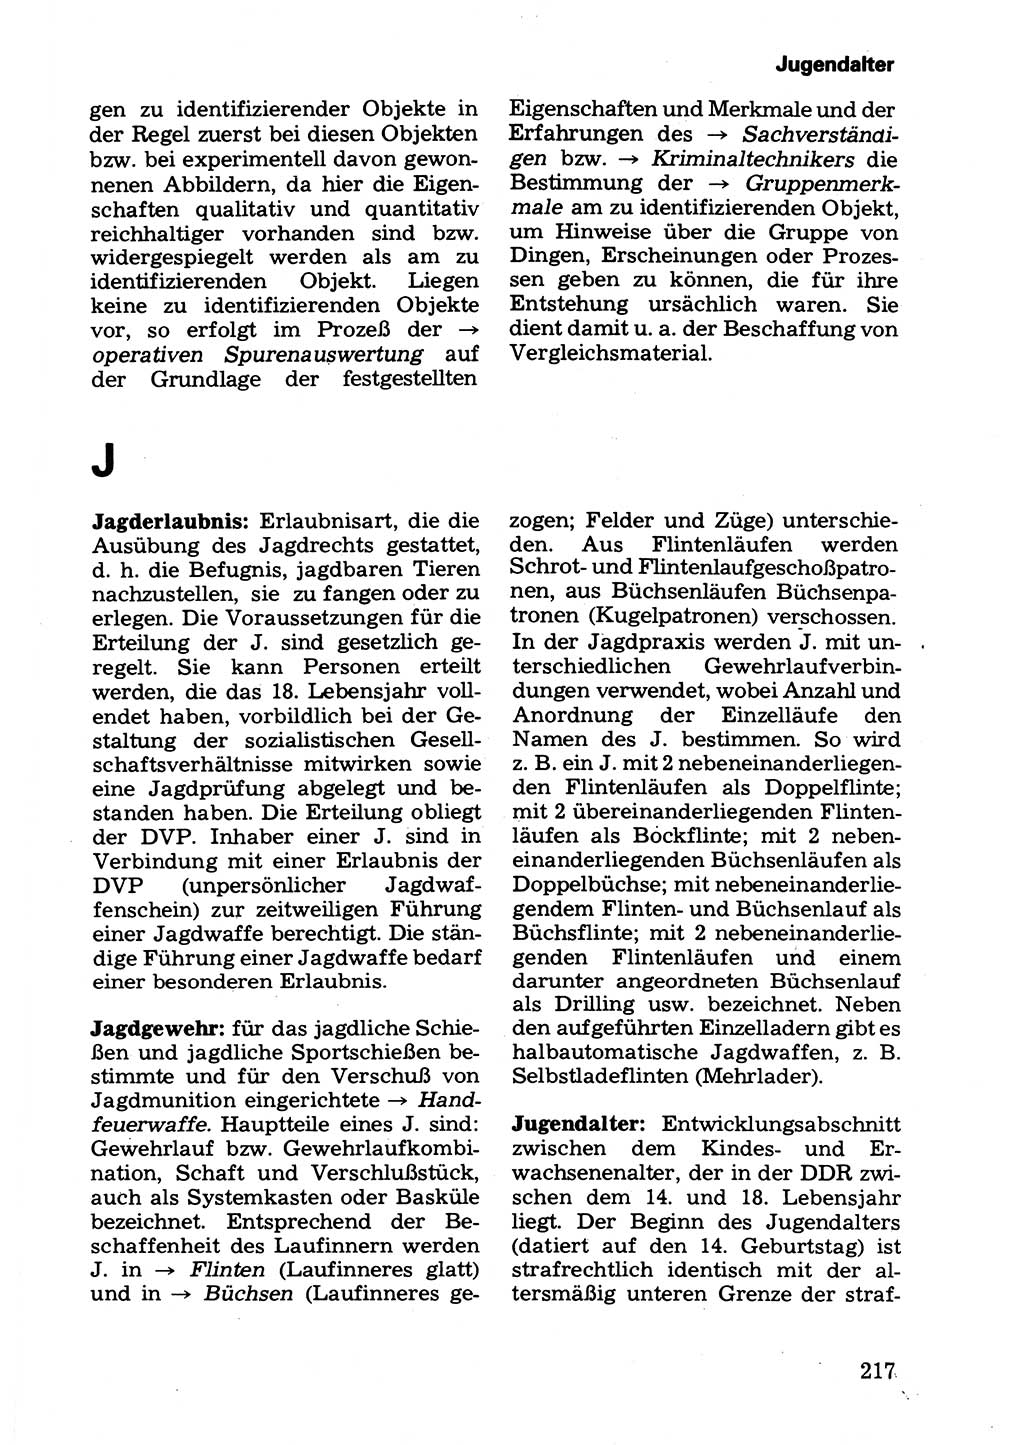 Wörterbuch der sozialistischen Kriminalistik [Deutsche Demokratische Republik (DDR)] 1981, Seite 217 (Wb. soz. Krim. DDR 1981, S. 217)